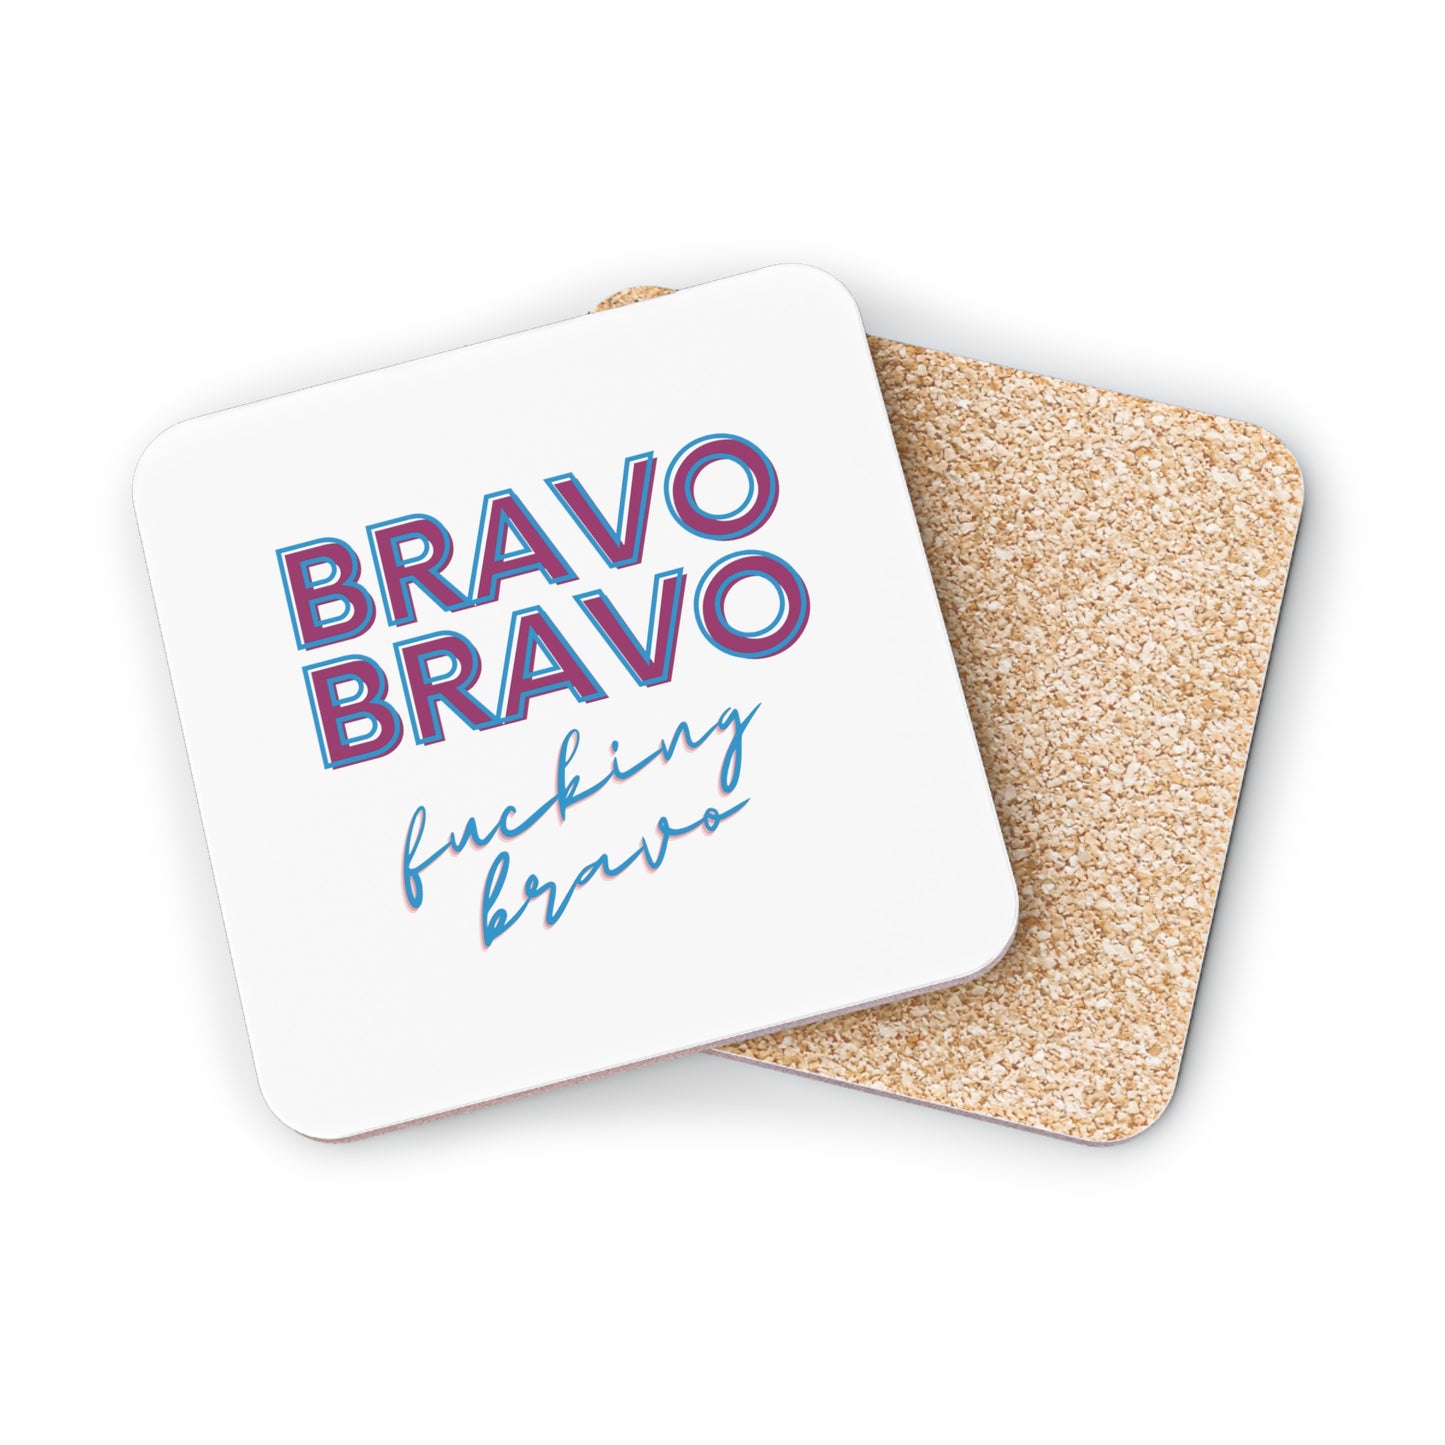 Bravo Bravo F-ing Bravo Coasters, Bravo TV